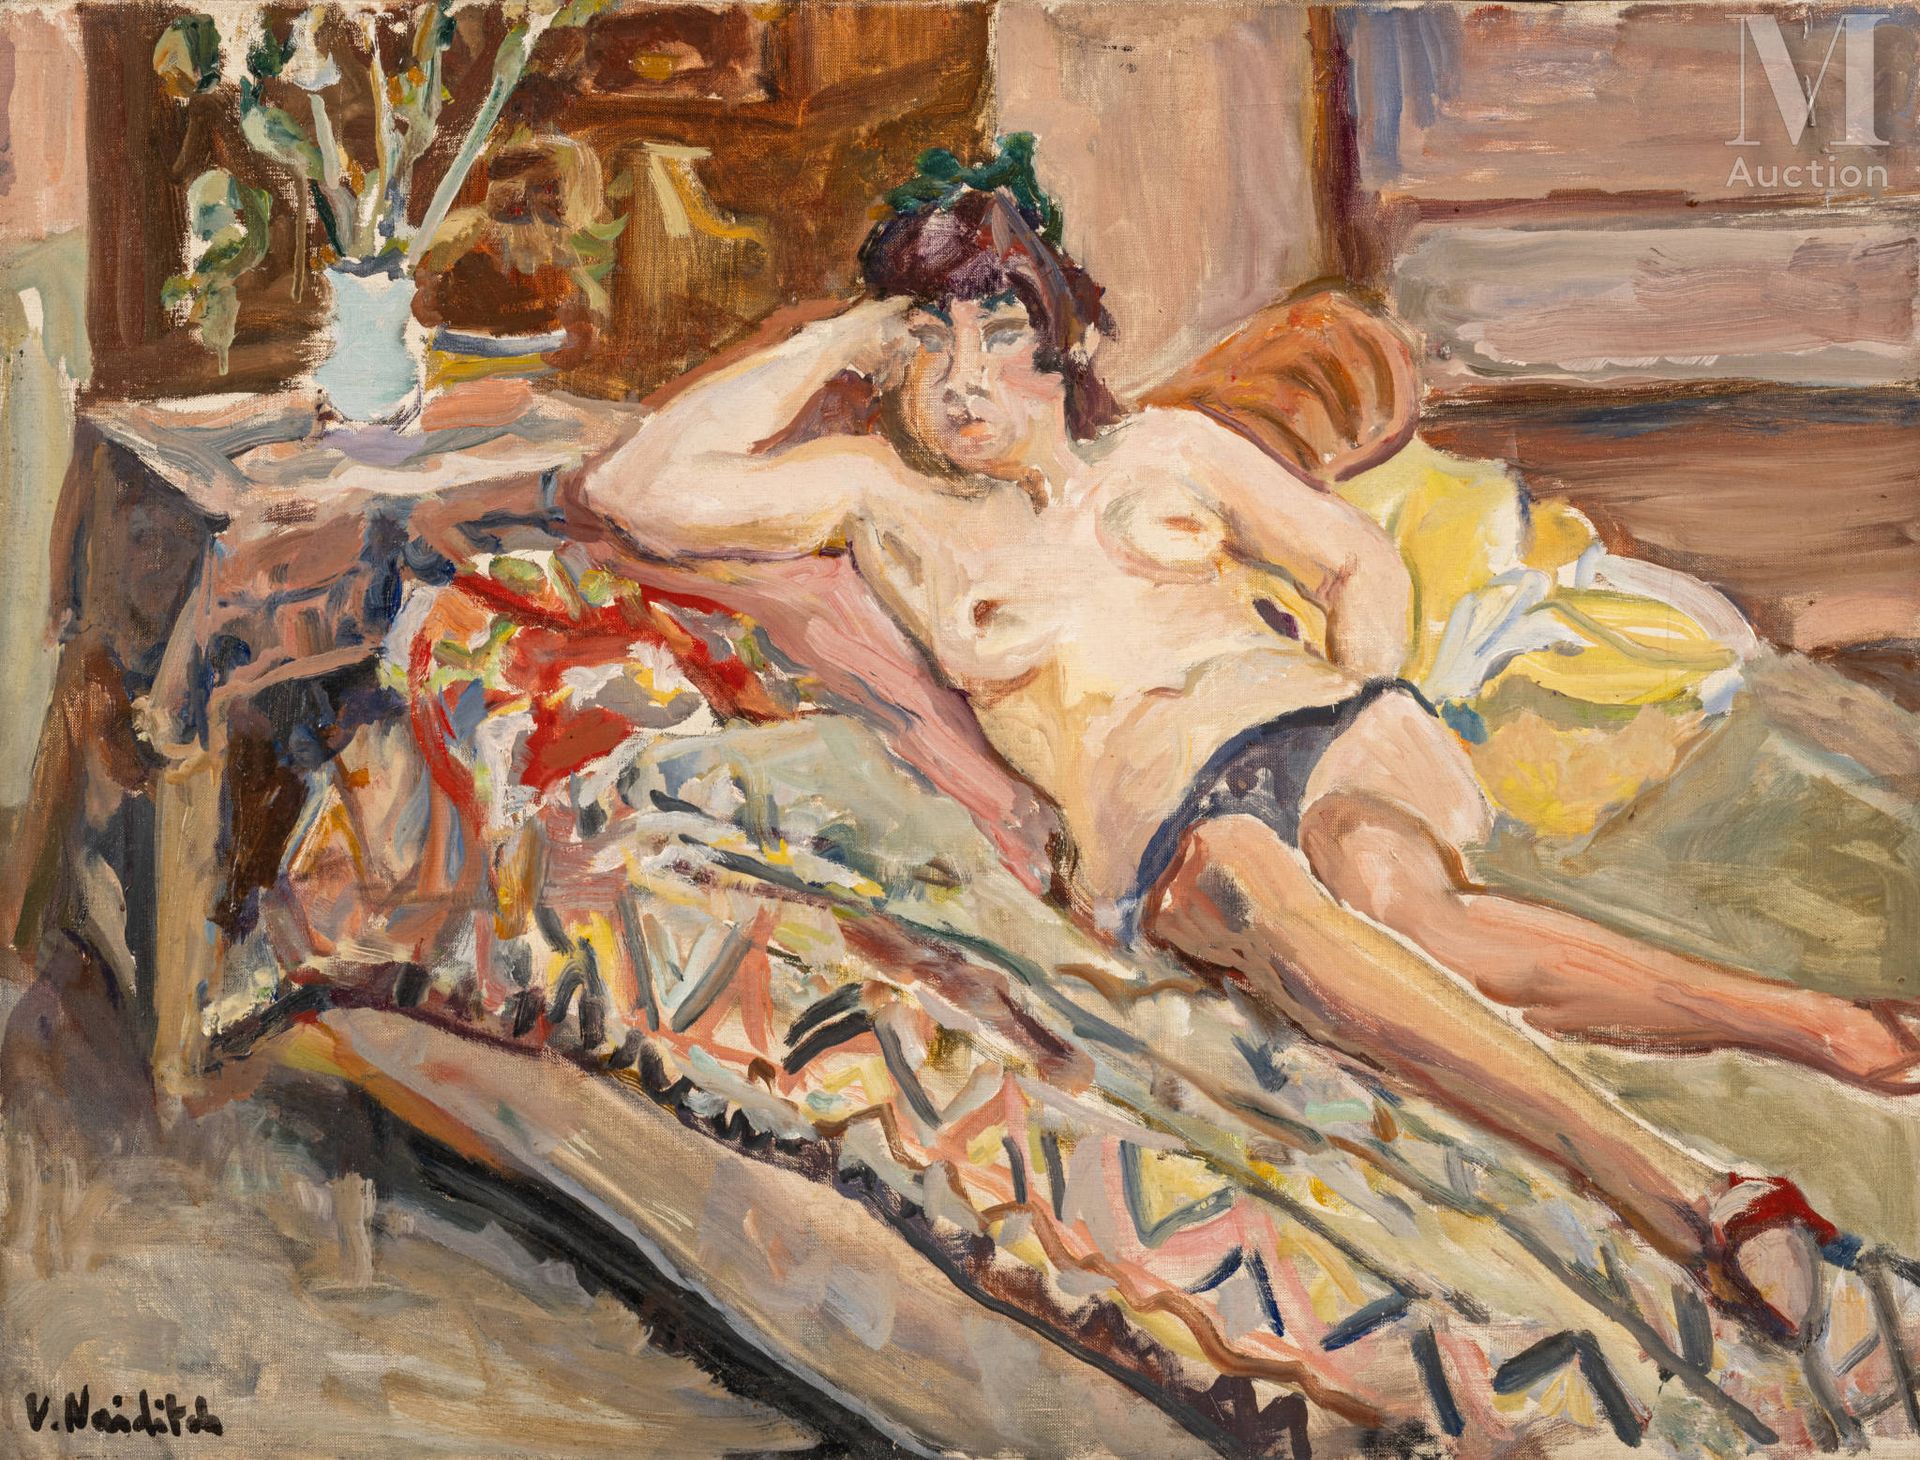 Vladimir NAIDITCH (Moscou 1903 - Paris 1981) Nackt auf der Couch

Öl auf Leinwan&hellip;